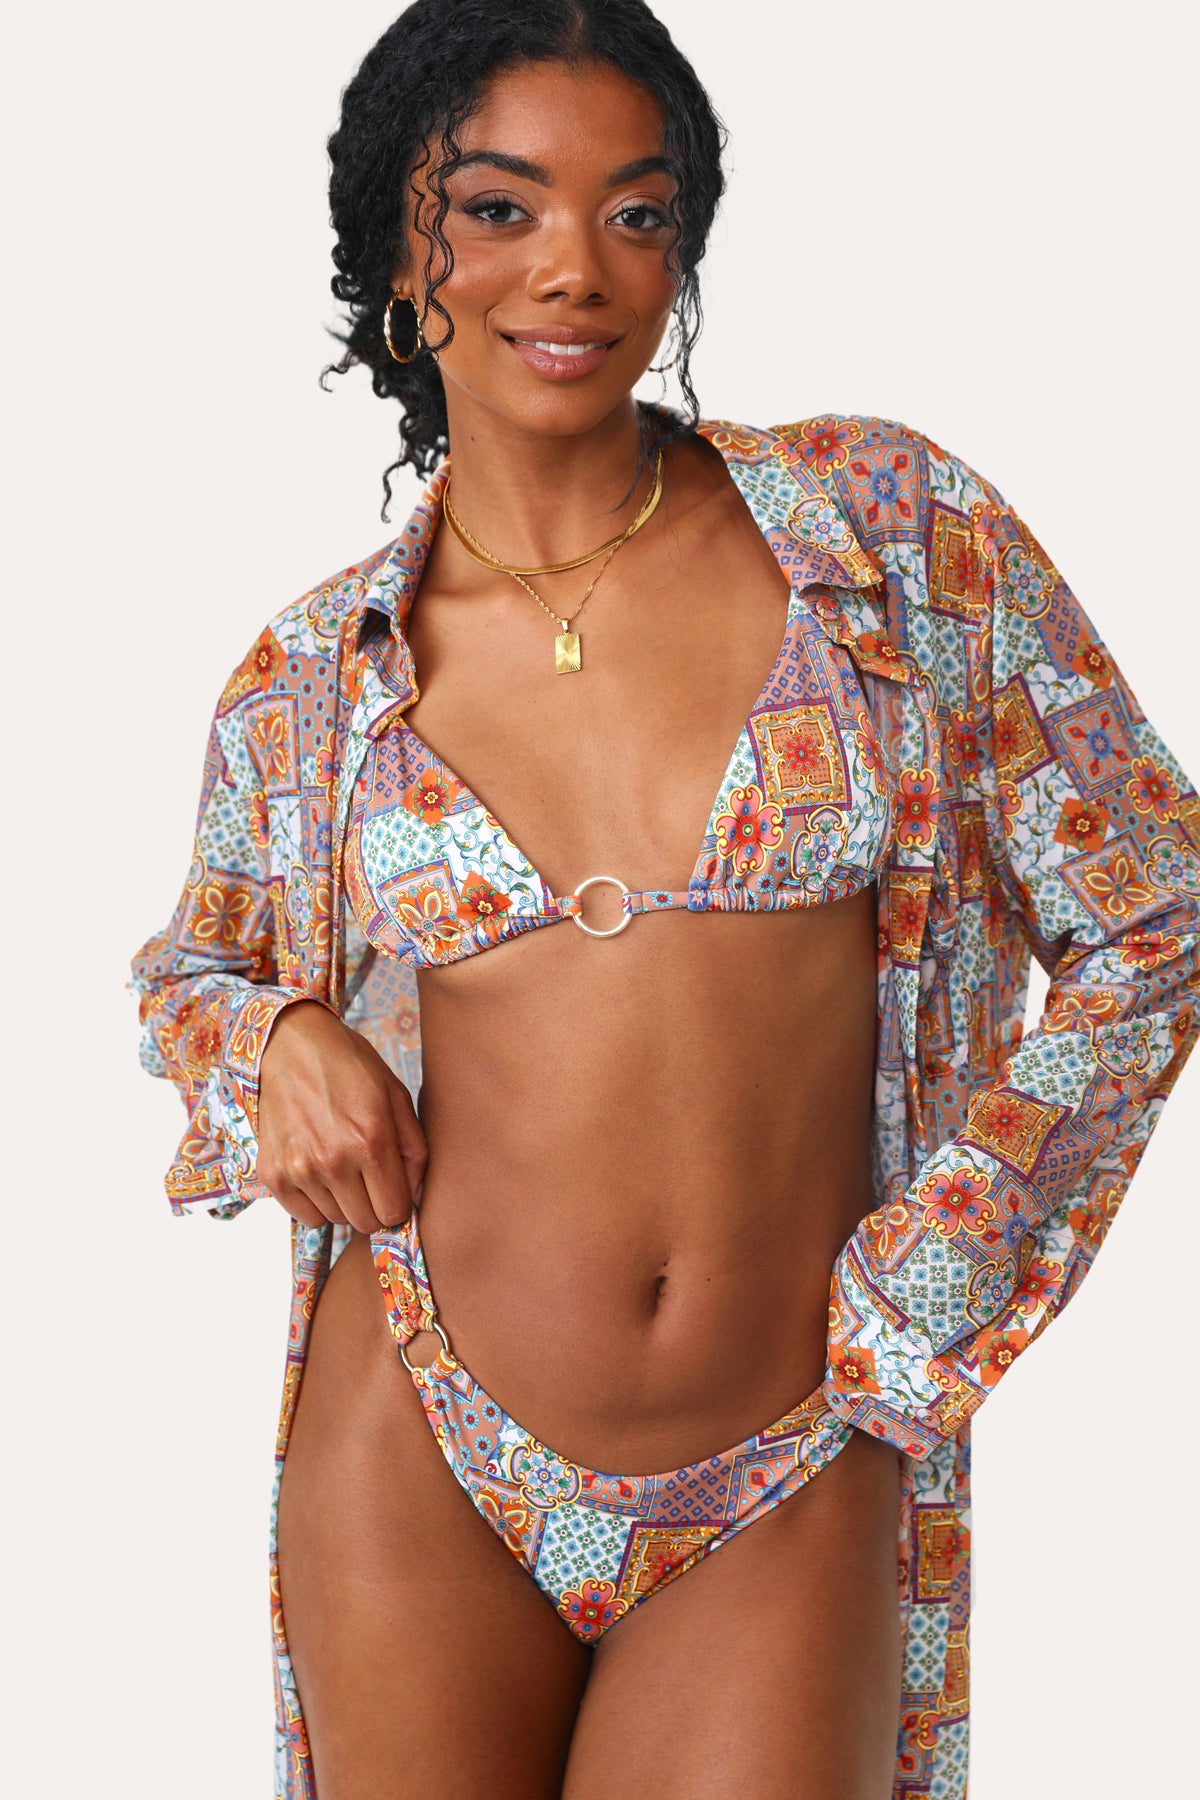 Model wearing the Mama Mia O-Ring printed Bikini Bottom.